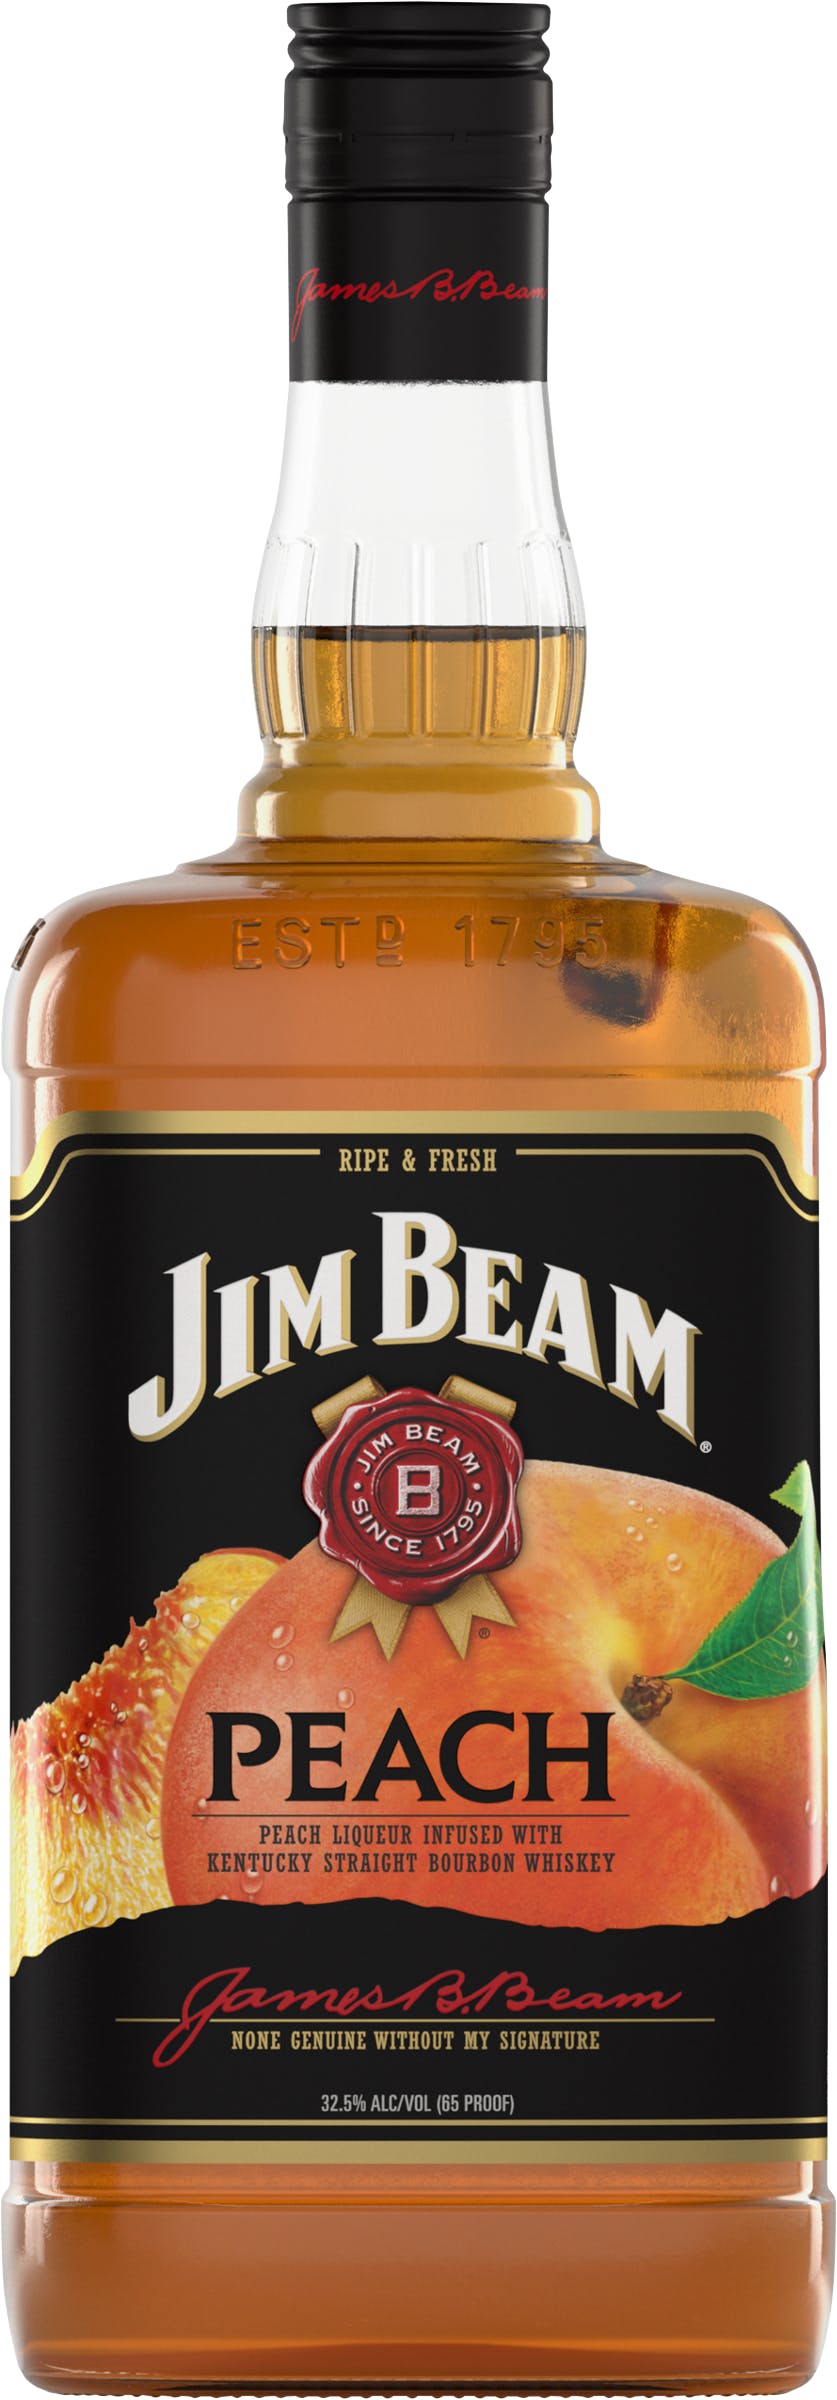 Beam Peach Liquor Wine & Jim - Argonaut 1.75L